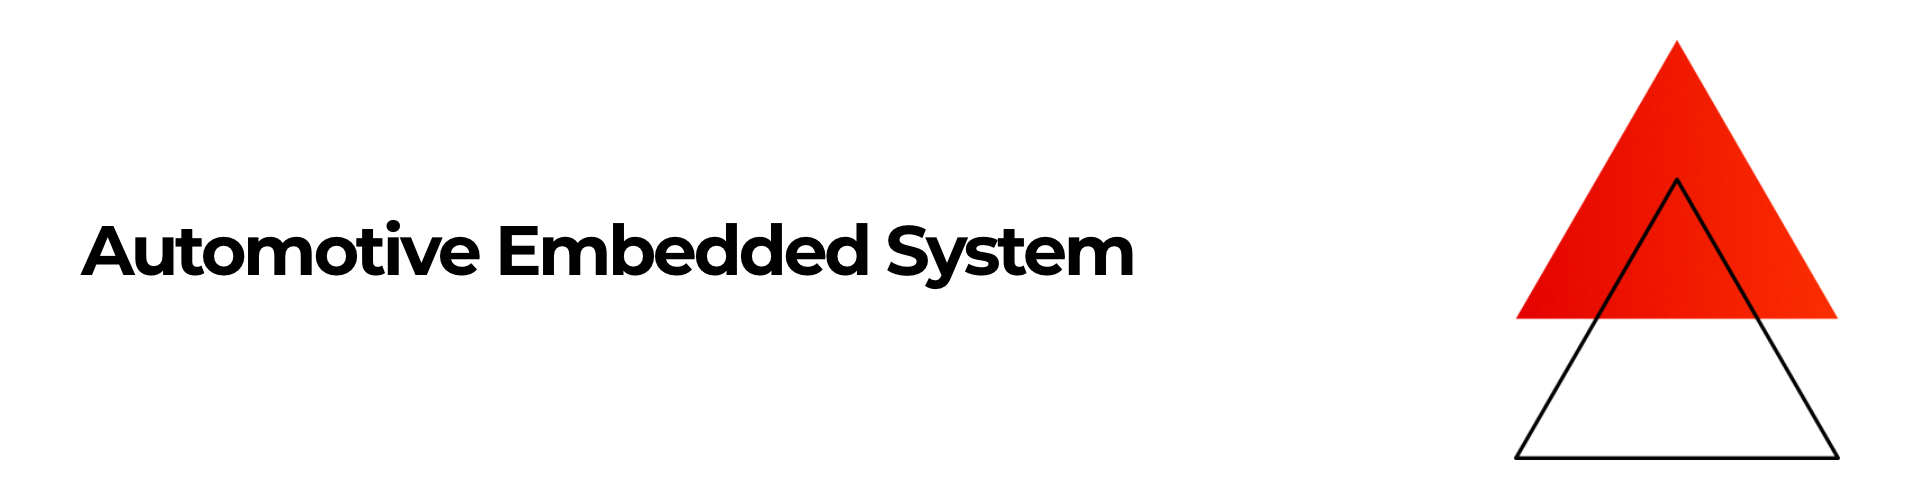 Automotive_embedded_system